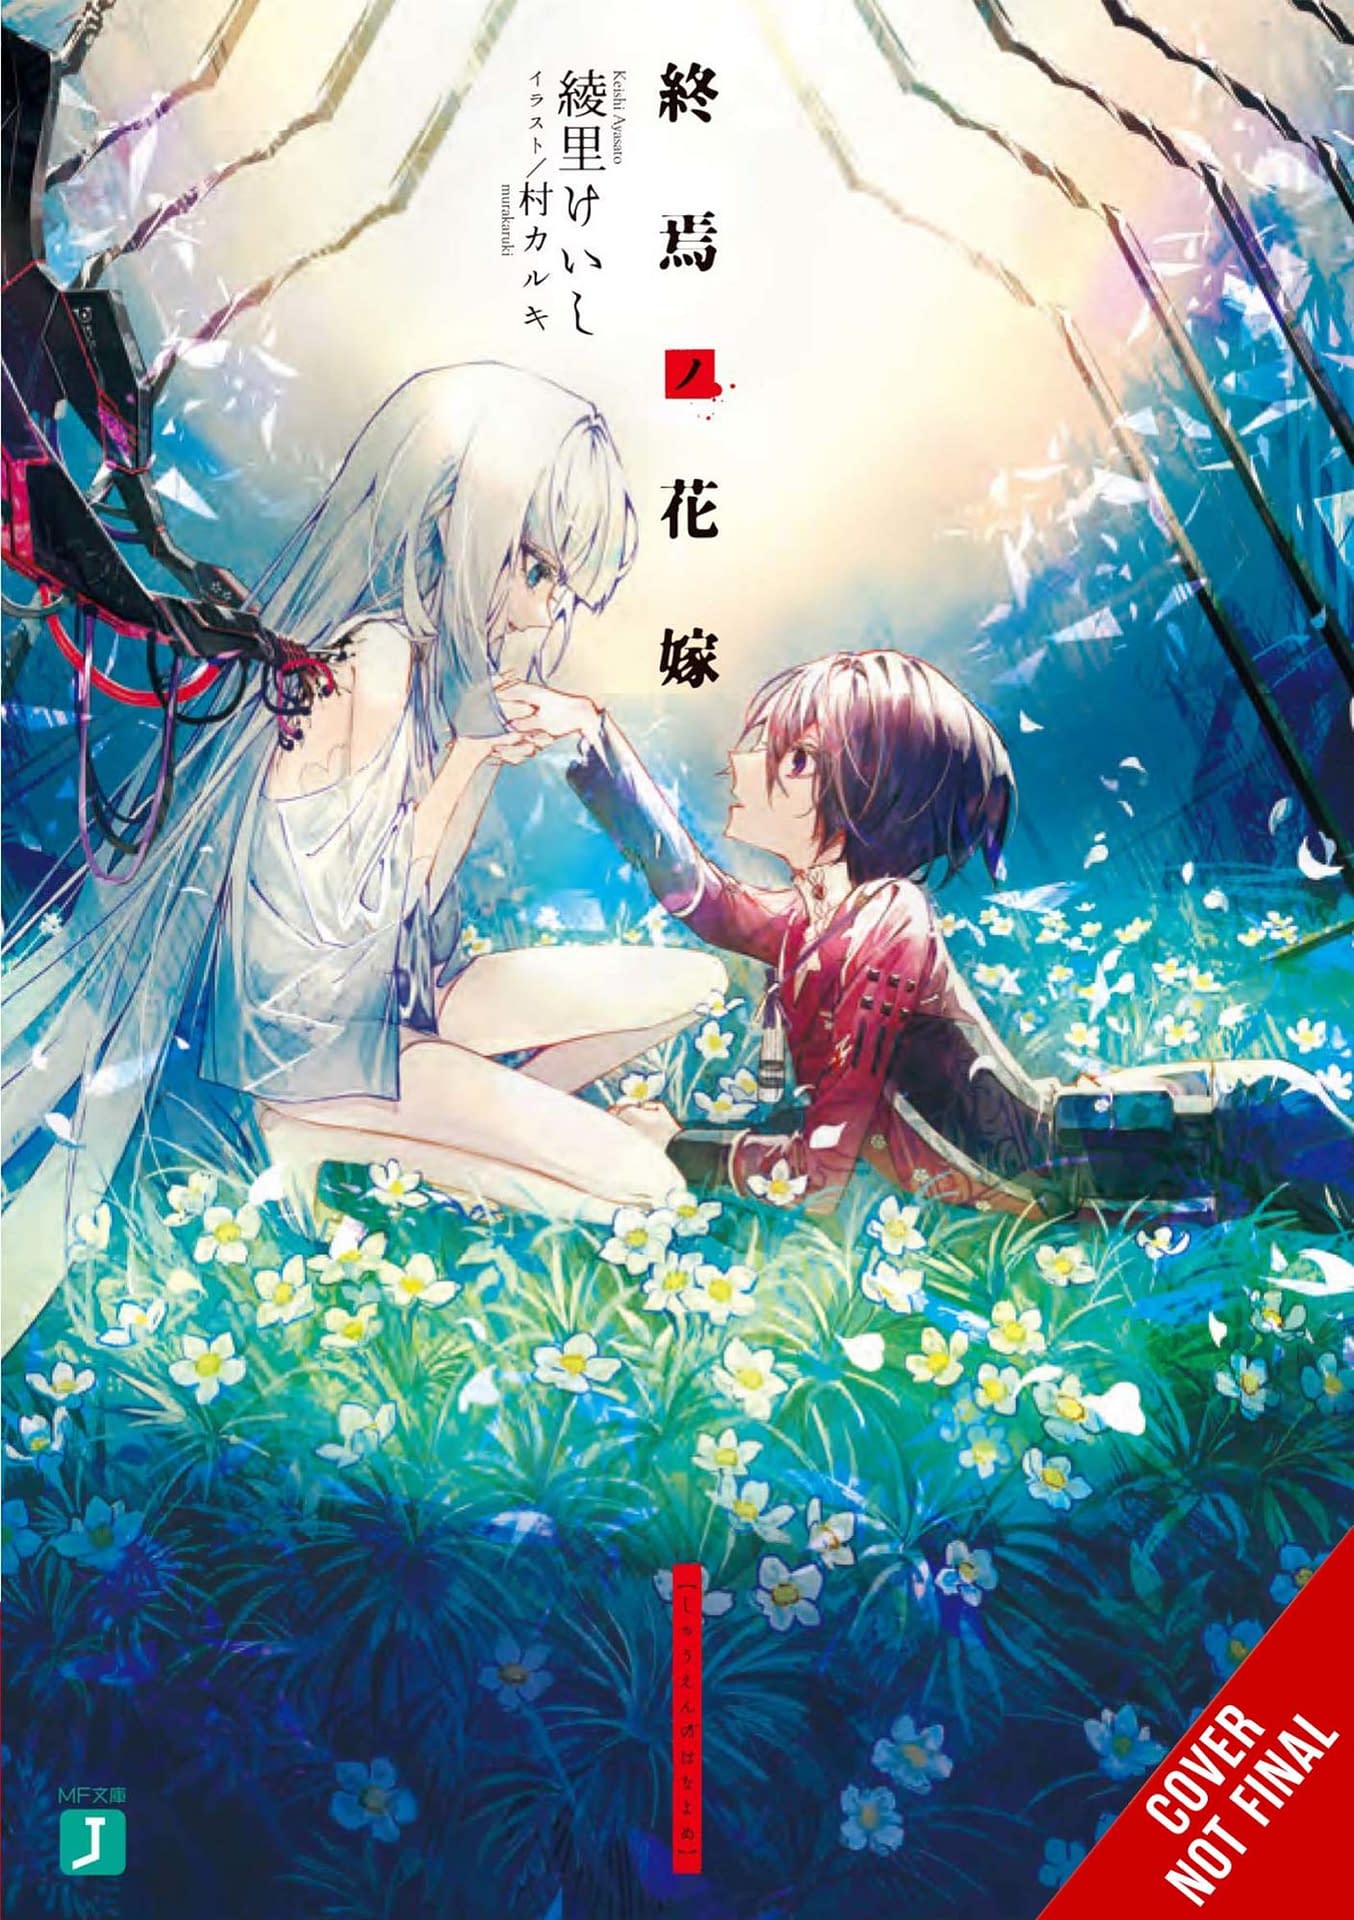  Kawaii Otaku - The Anime World Is My Kingdom - Manga